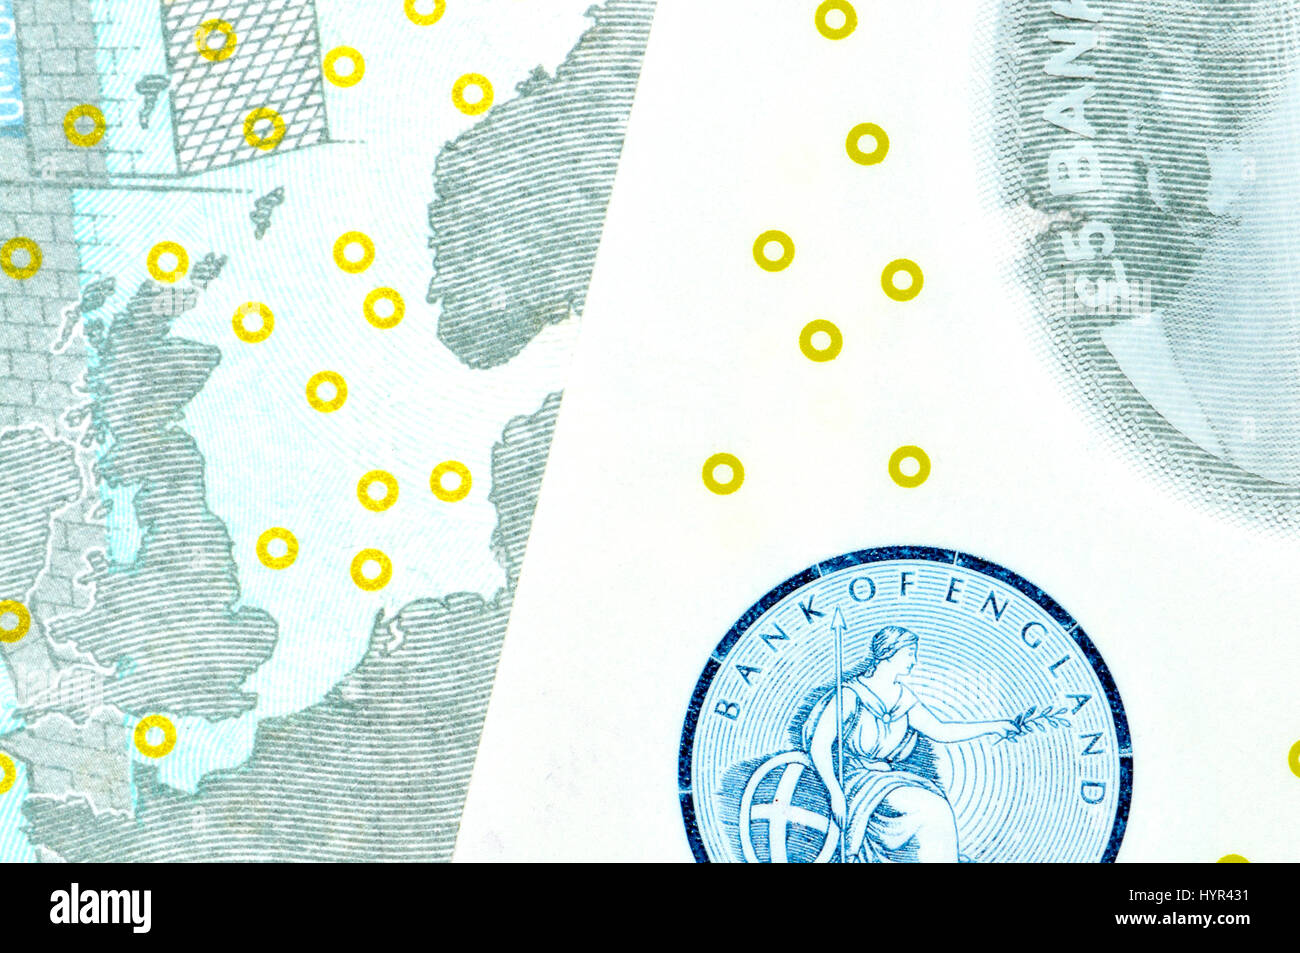 Nouveau polymère britannique £5 notes (2016) caractéristiques de sécurité : constellation Eurion - reconnaissance internationale Plan des points jaunes empêchant l'sauvegardée dansl Banque D'Images